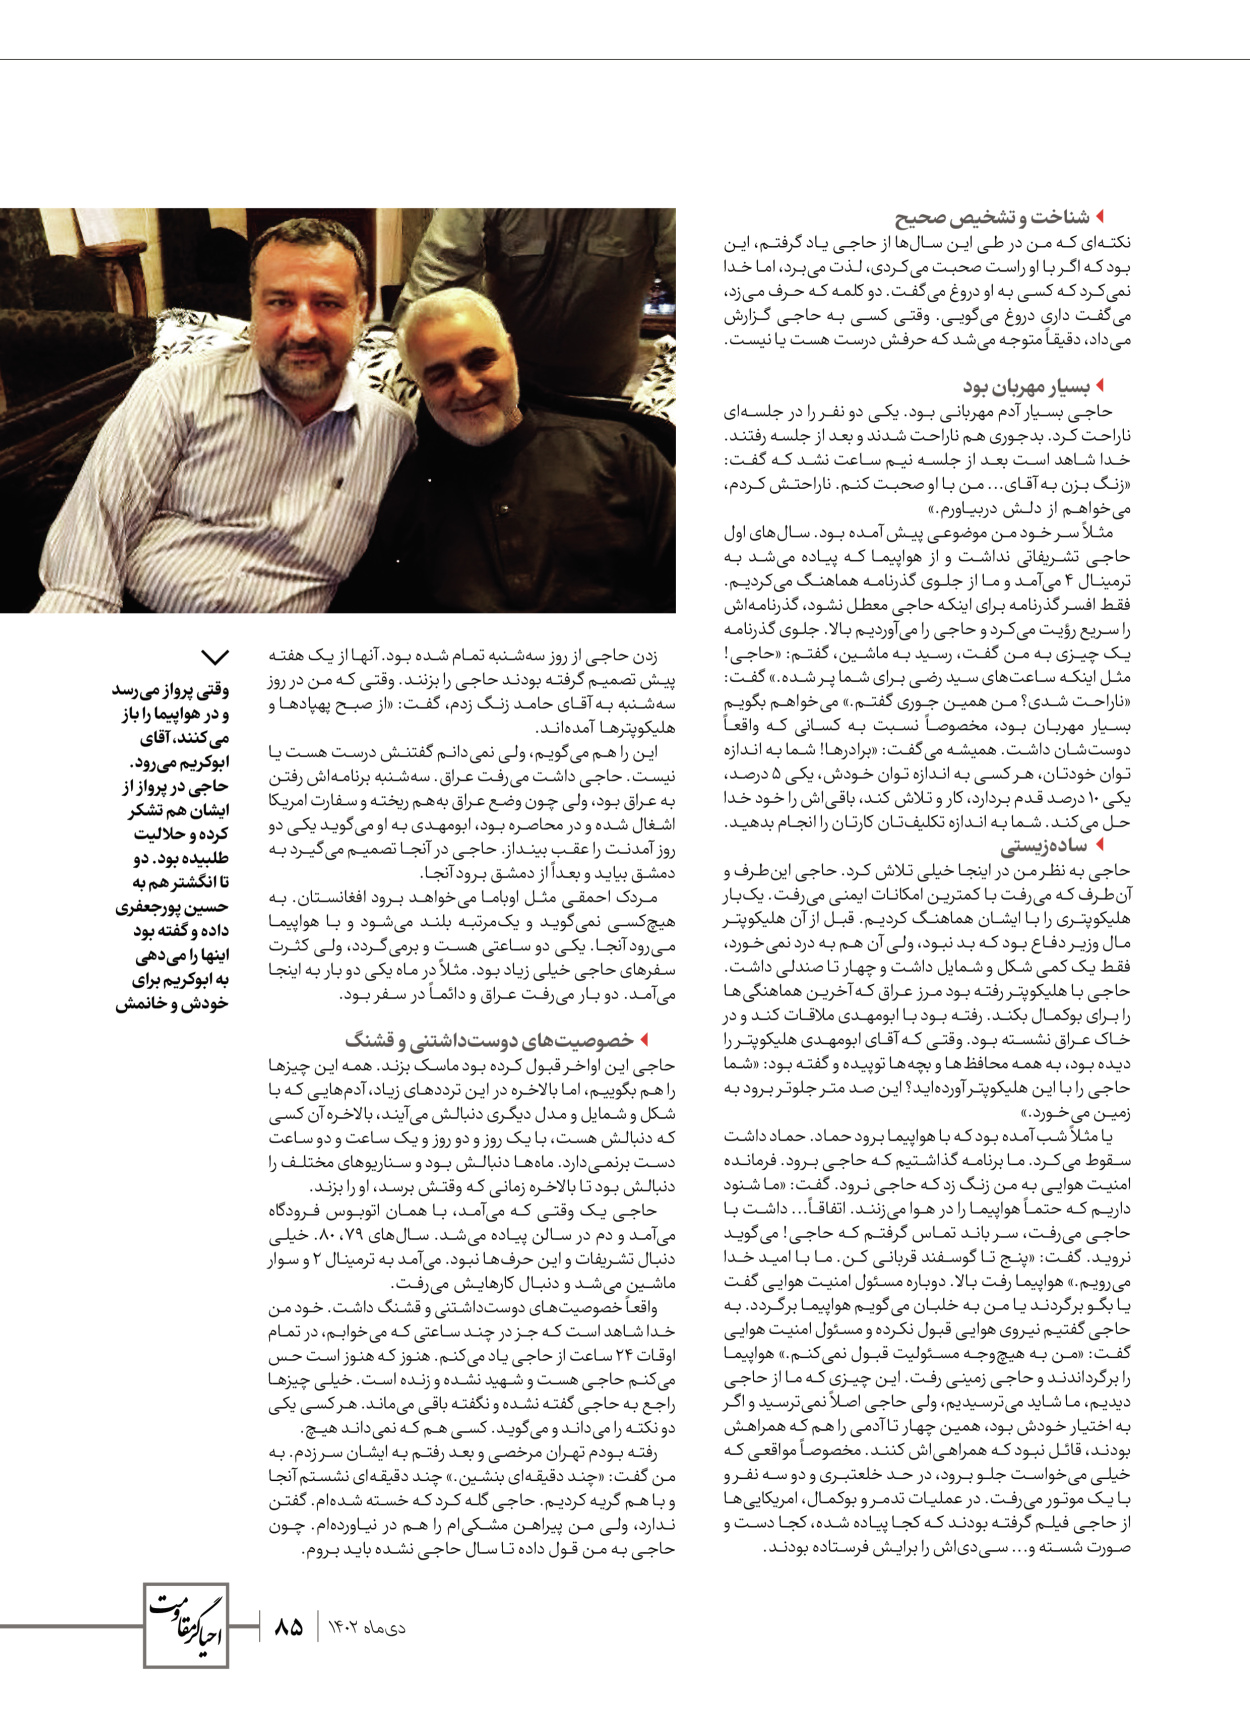 روزنامه ایران - ویژه نامه ویژ ه نامه چهارمین سالگرد شهادت سردار سلیمانی - ۱۳ دی ۱۴۰۲ - صفحه ۸۵